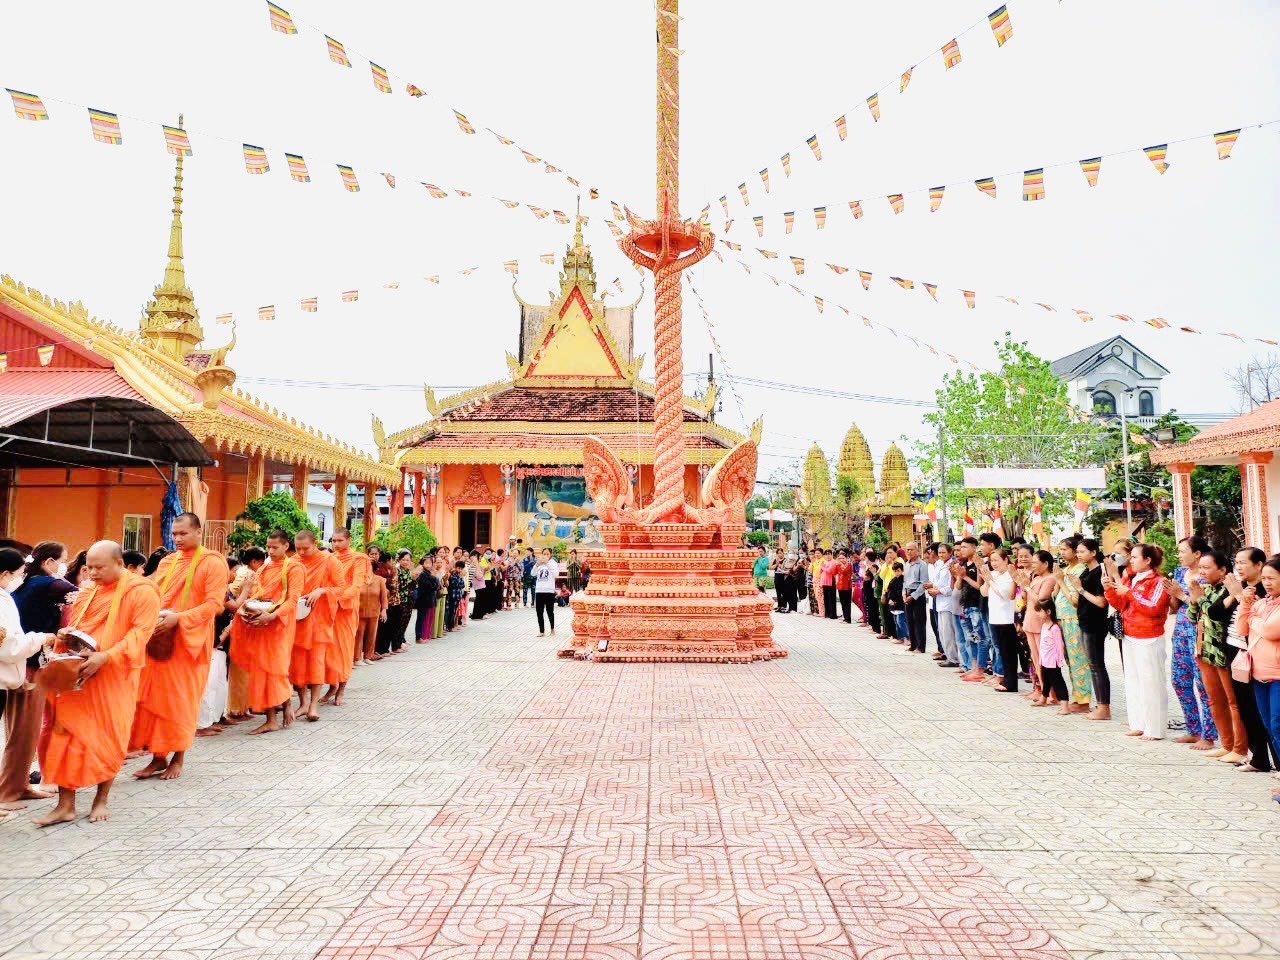 Tại chùa Chắc Băng Mới, Vĩnh Phước 2, Thị Trấn Vĩnh Thuận, chư tăng, phật tử và người dân Khmer cùng tề tựu về Chùa tổ chức phong tục, nghi lễ nhân dịp Tết Chol- Chnam – Thmay năm 2023.